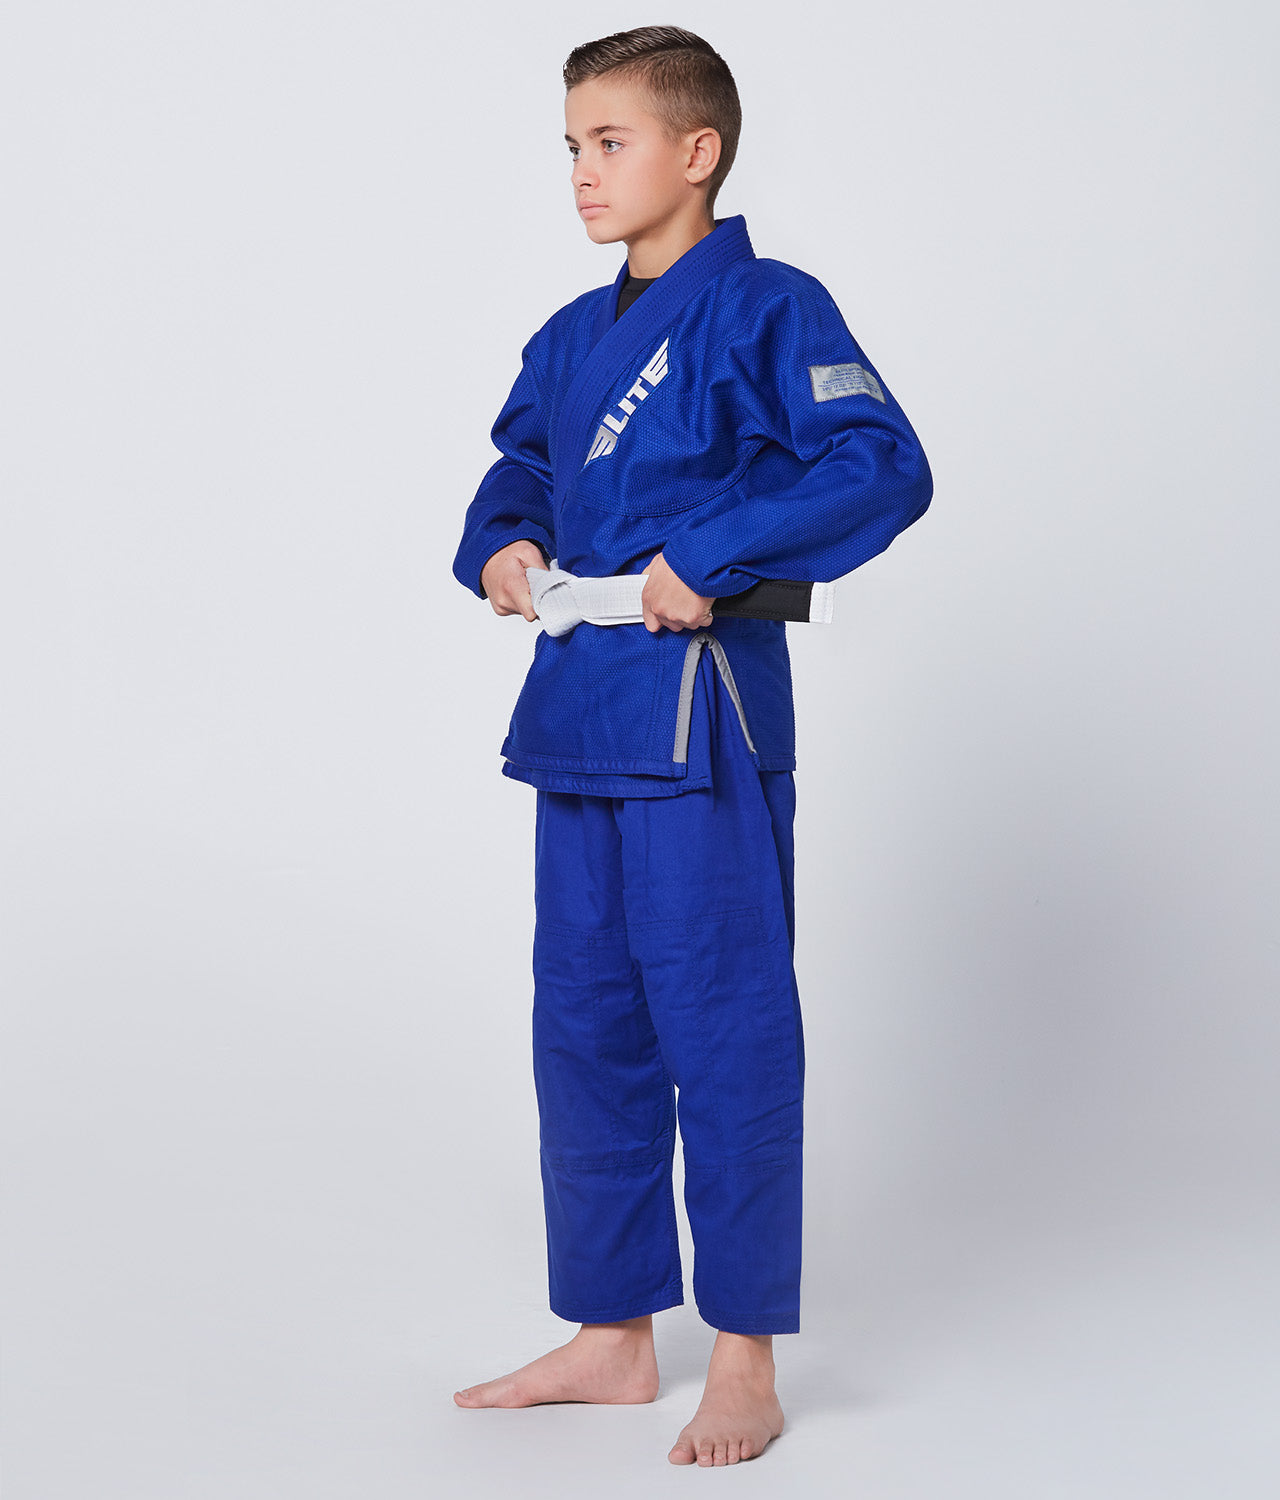 Elite Sports Kids' Core Blue Brazilian Jiu Jitsu BJJ Gi